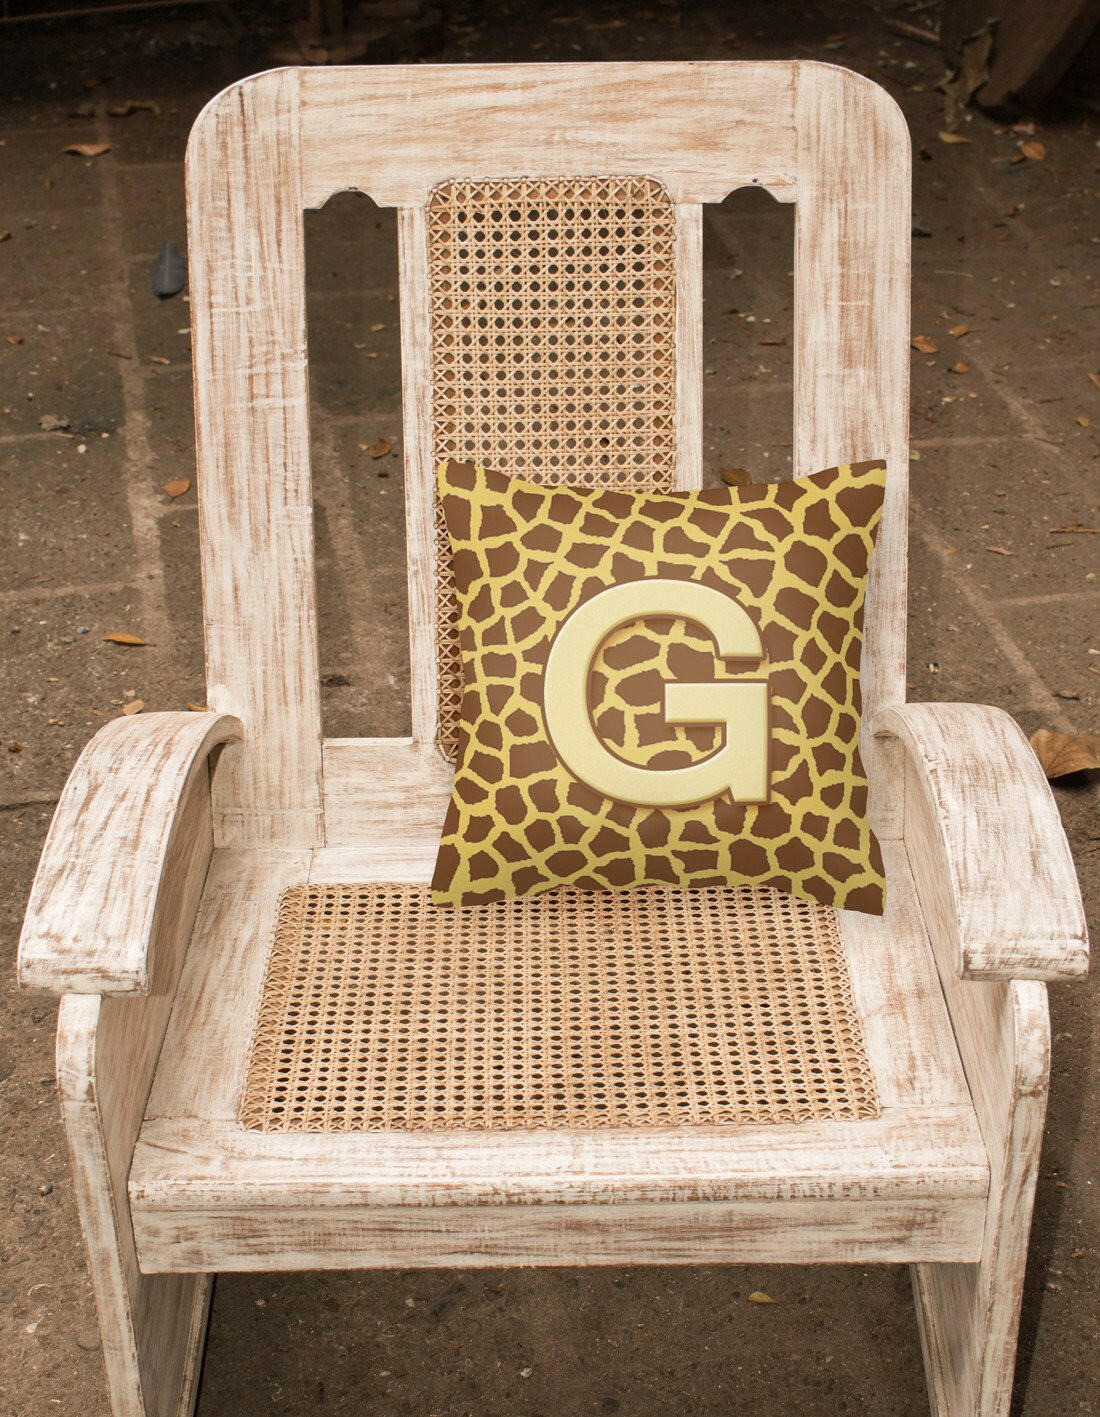 Monogram Initial G Giraffe Decorative   Canvas Fabric Pillow CJ1025 - the-store.com